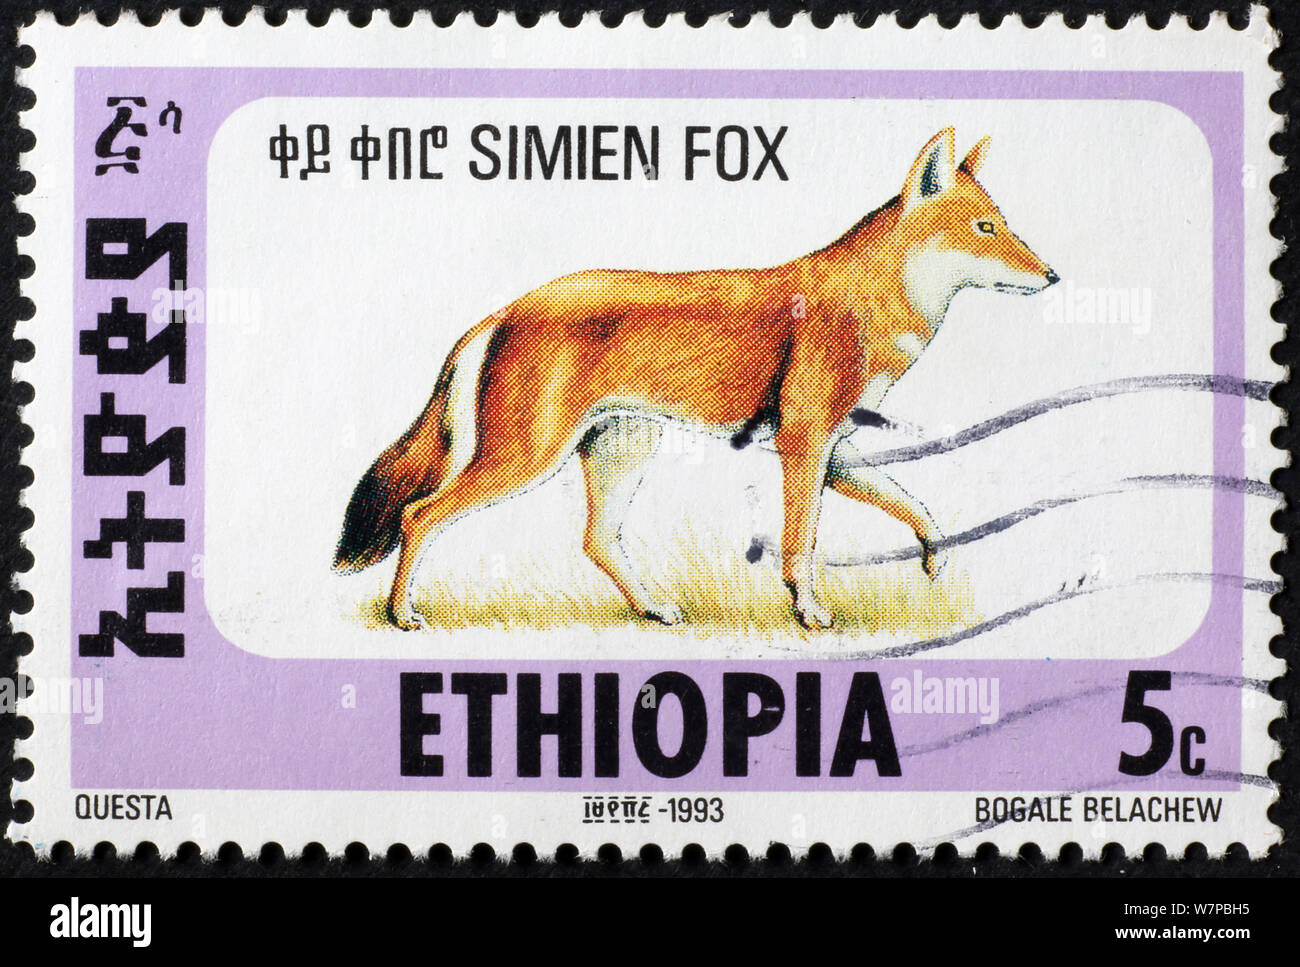 Simien fox il francobollo di Etiopia Foto Stock